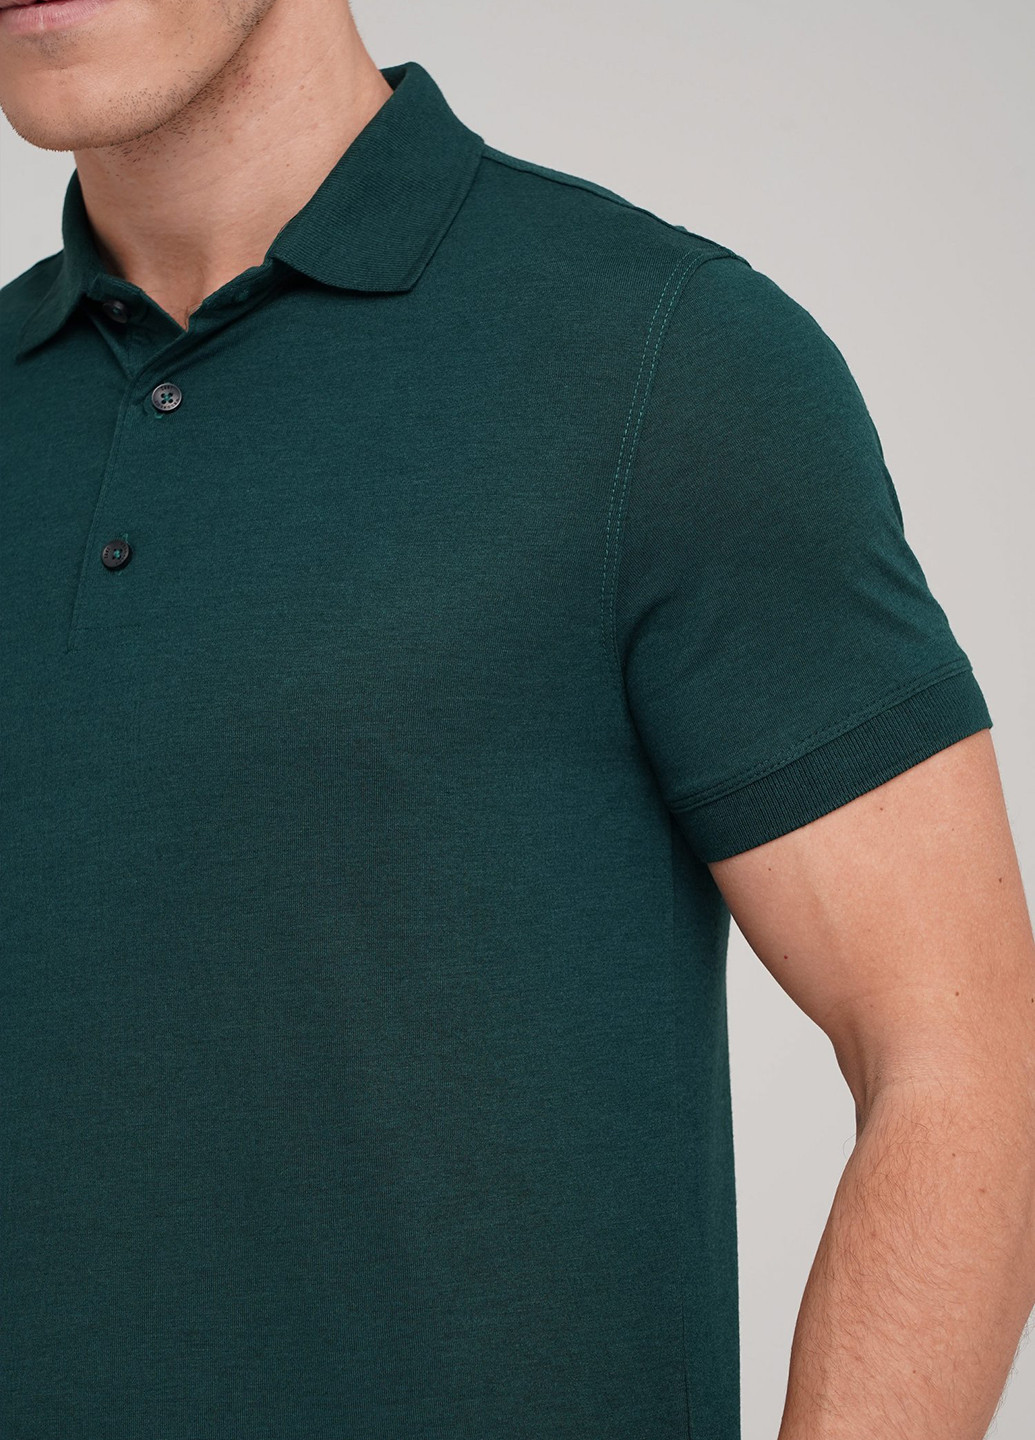 Темно-зеленая футболка-поло для мужчин Trend Collection однотонная